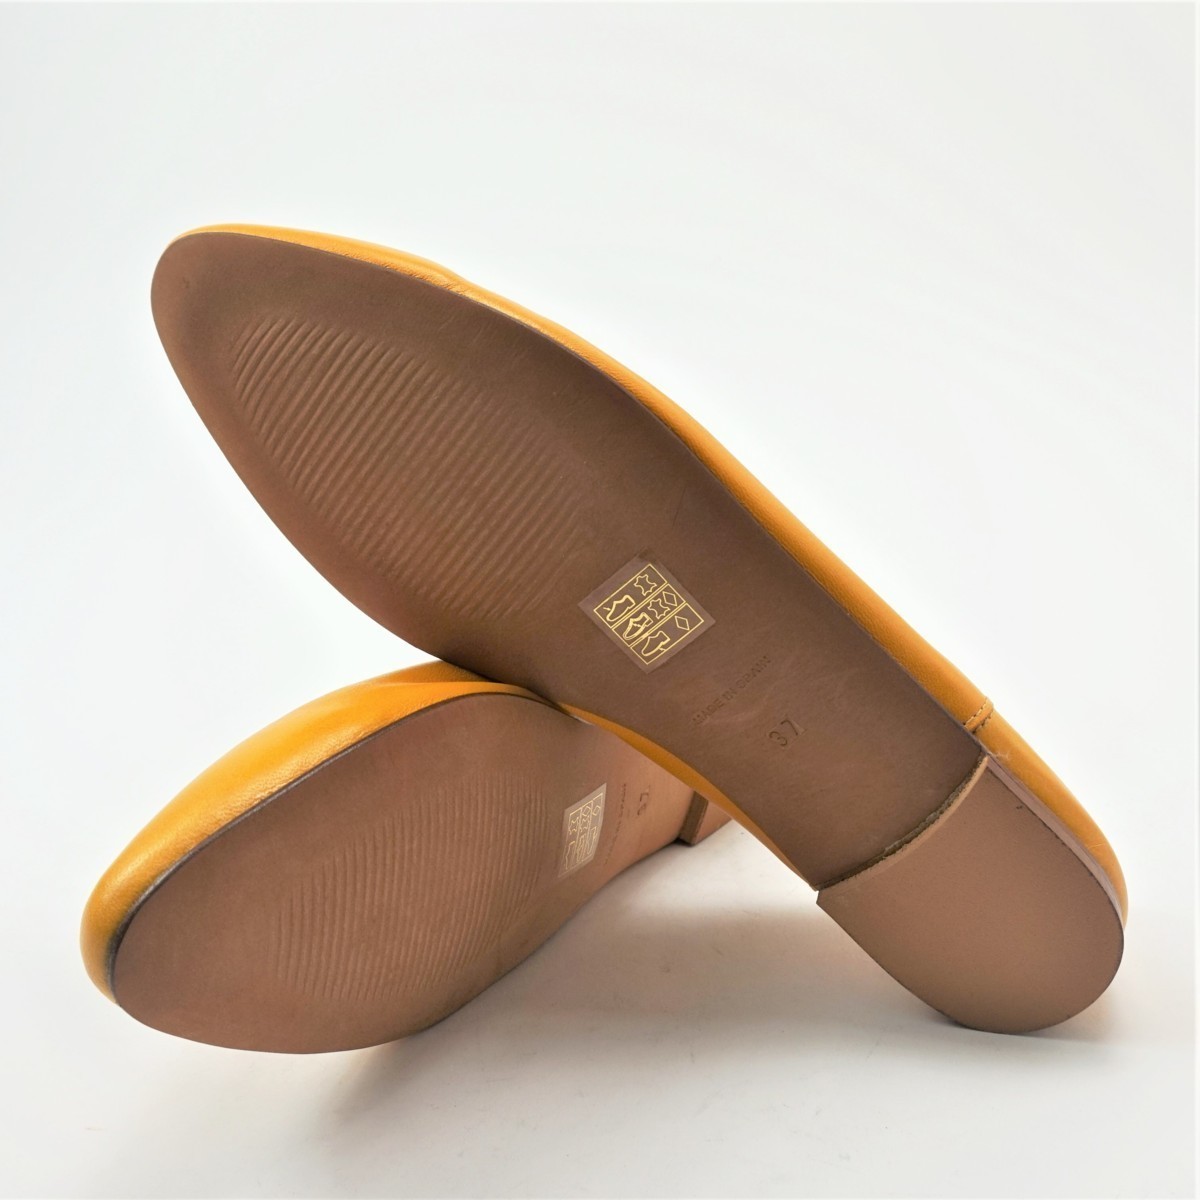  полцены туфли-лодочки 24.5cm желтый кожа натуральная кожа новый товар не использовался Flat .... outlet Испания производства 4804658